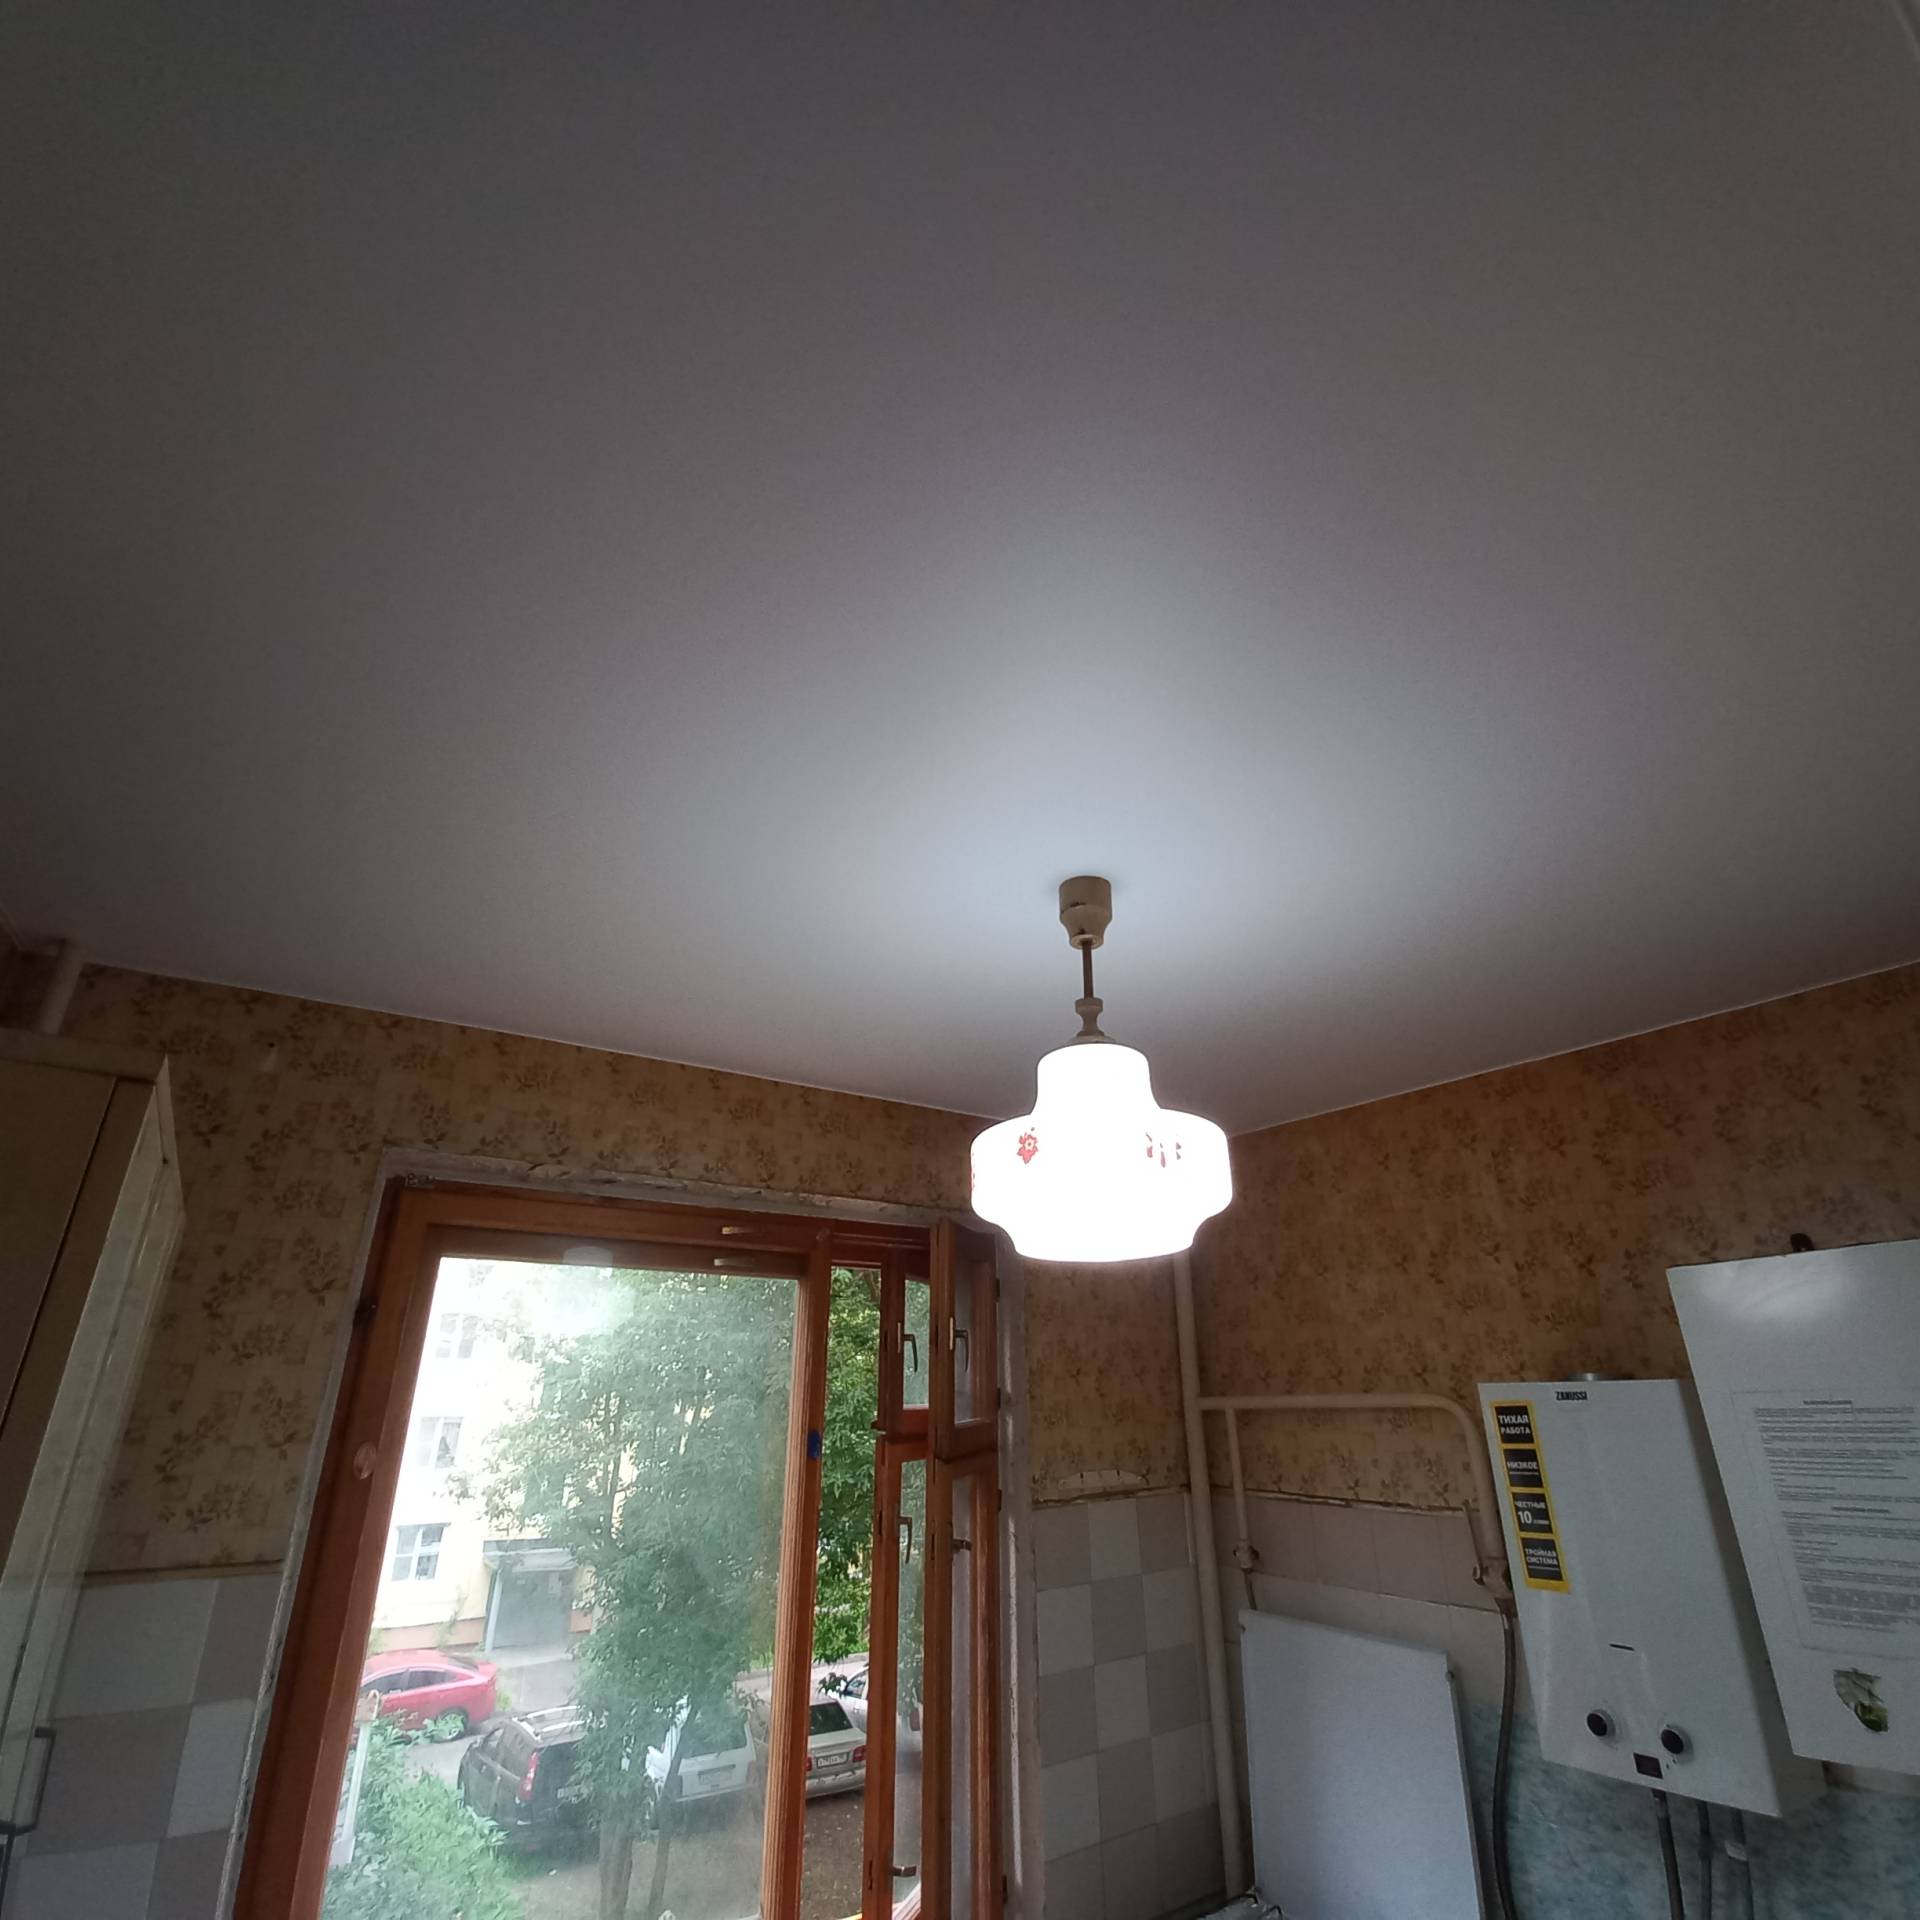 натяжной потолок на кухню